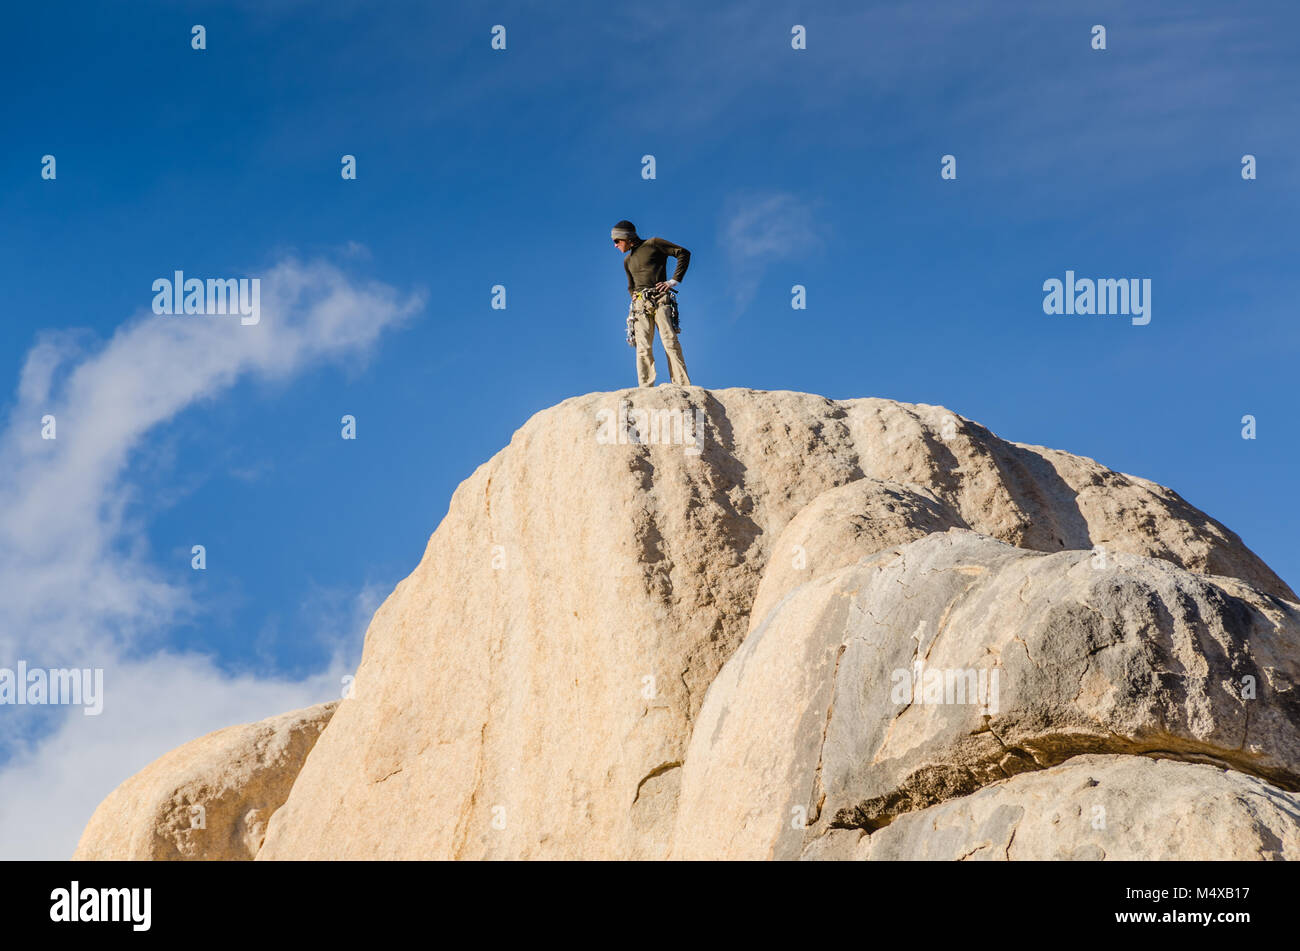 Un male rock climber se dresse au sommet le sommet d'Intersection Rock, l'éminent 150-pied grand monolithe de monzonite reconnue comme le berceau de climbi Banque D'Images